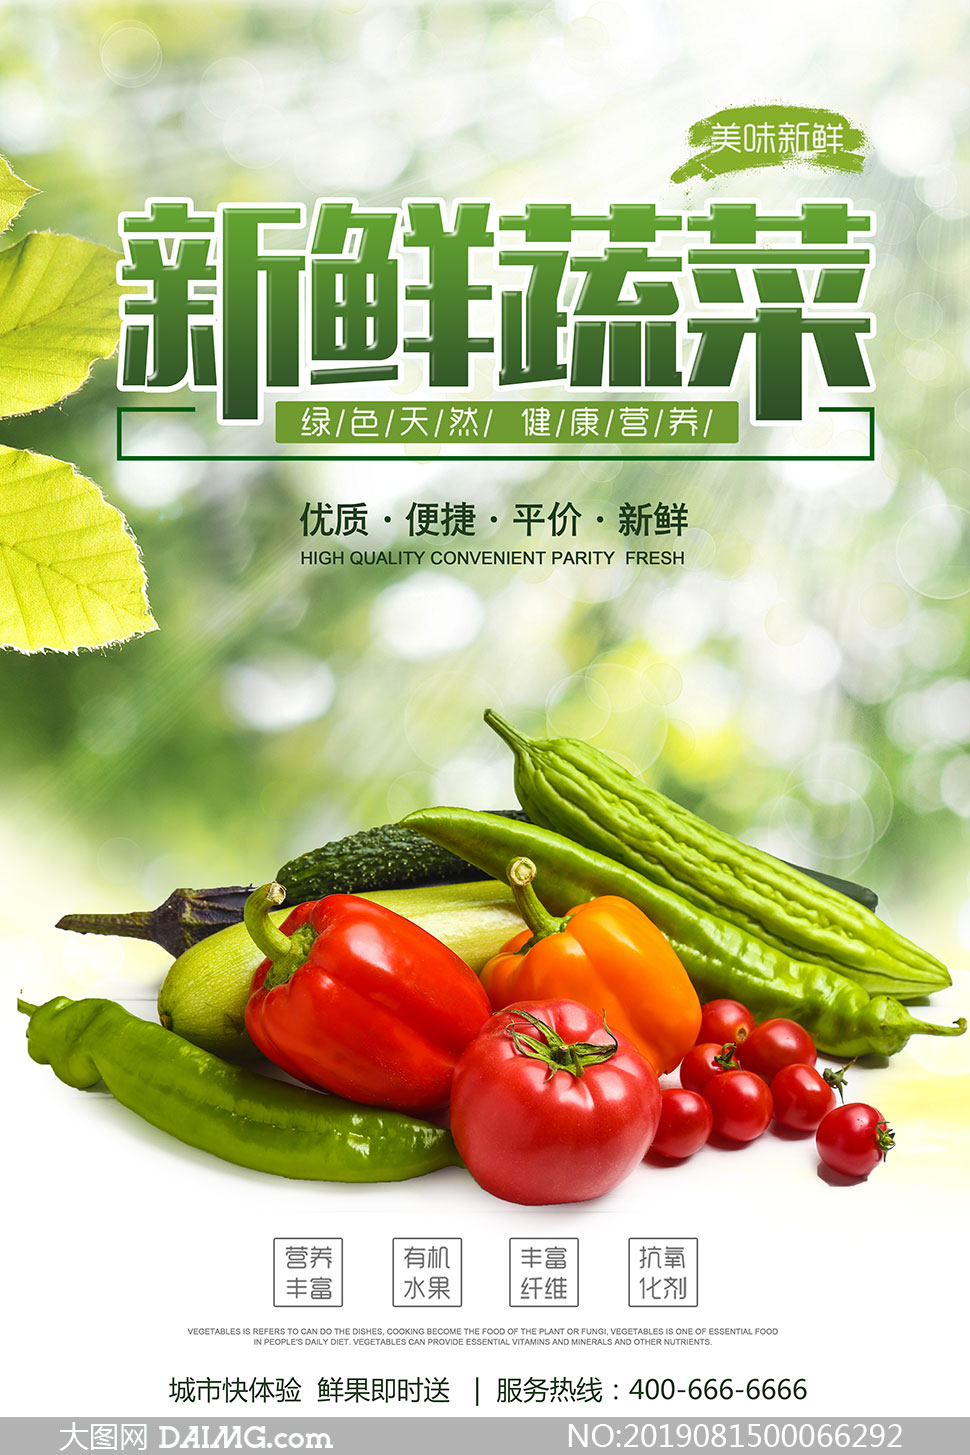 新鲜蔬菜食材宣传海报设计psd素材